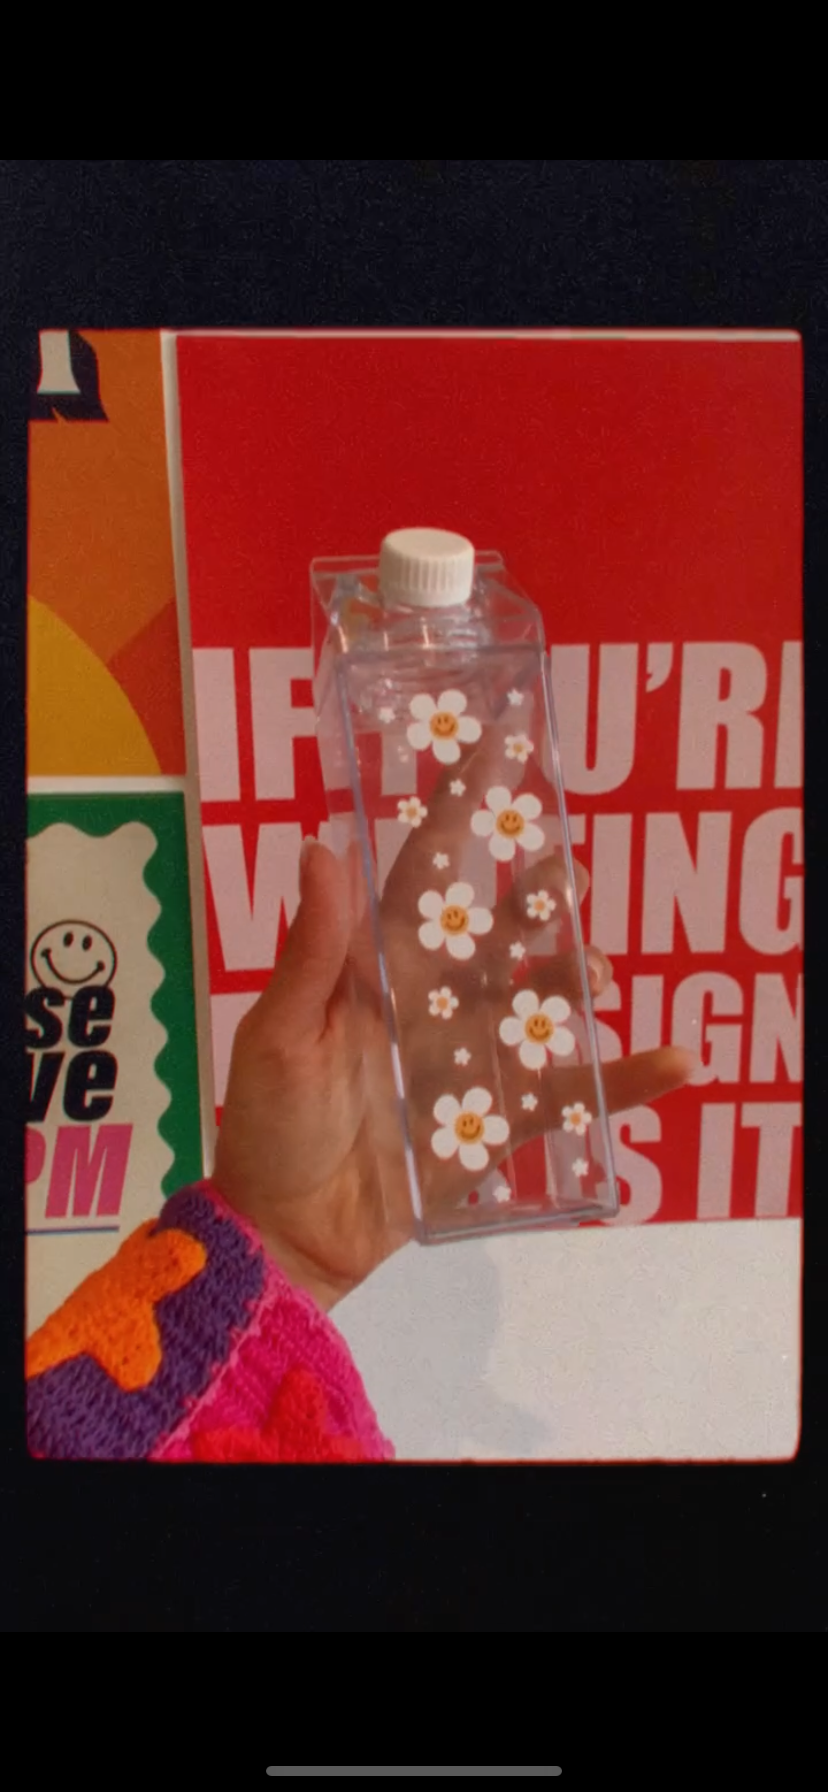 Daisy Milk Carton Water Bottle